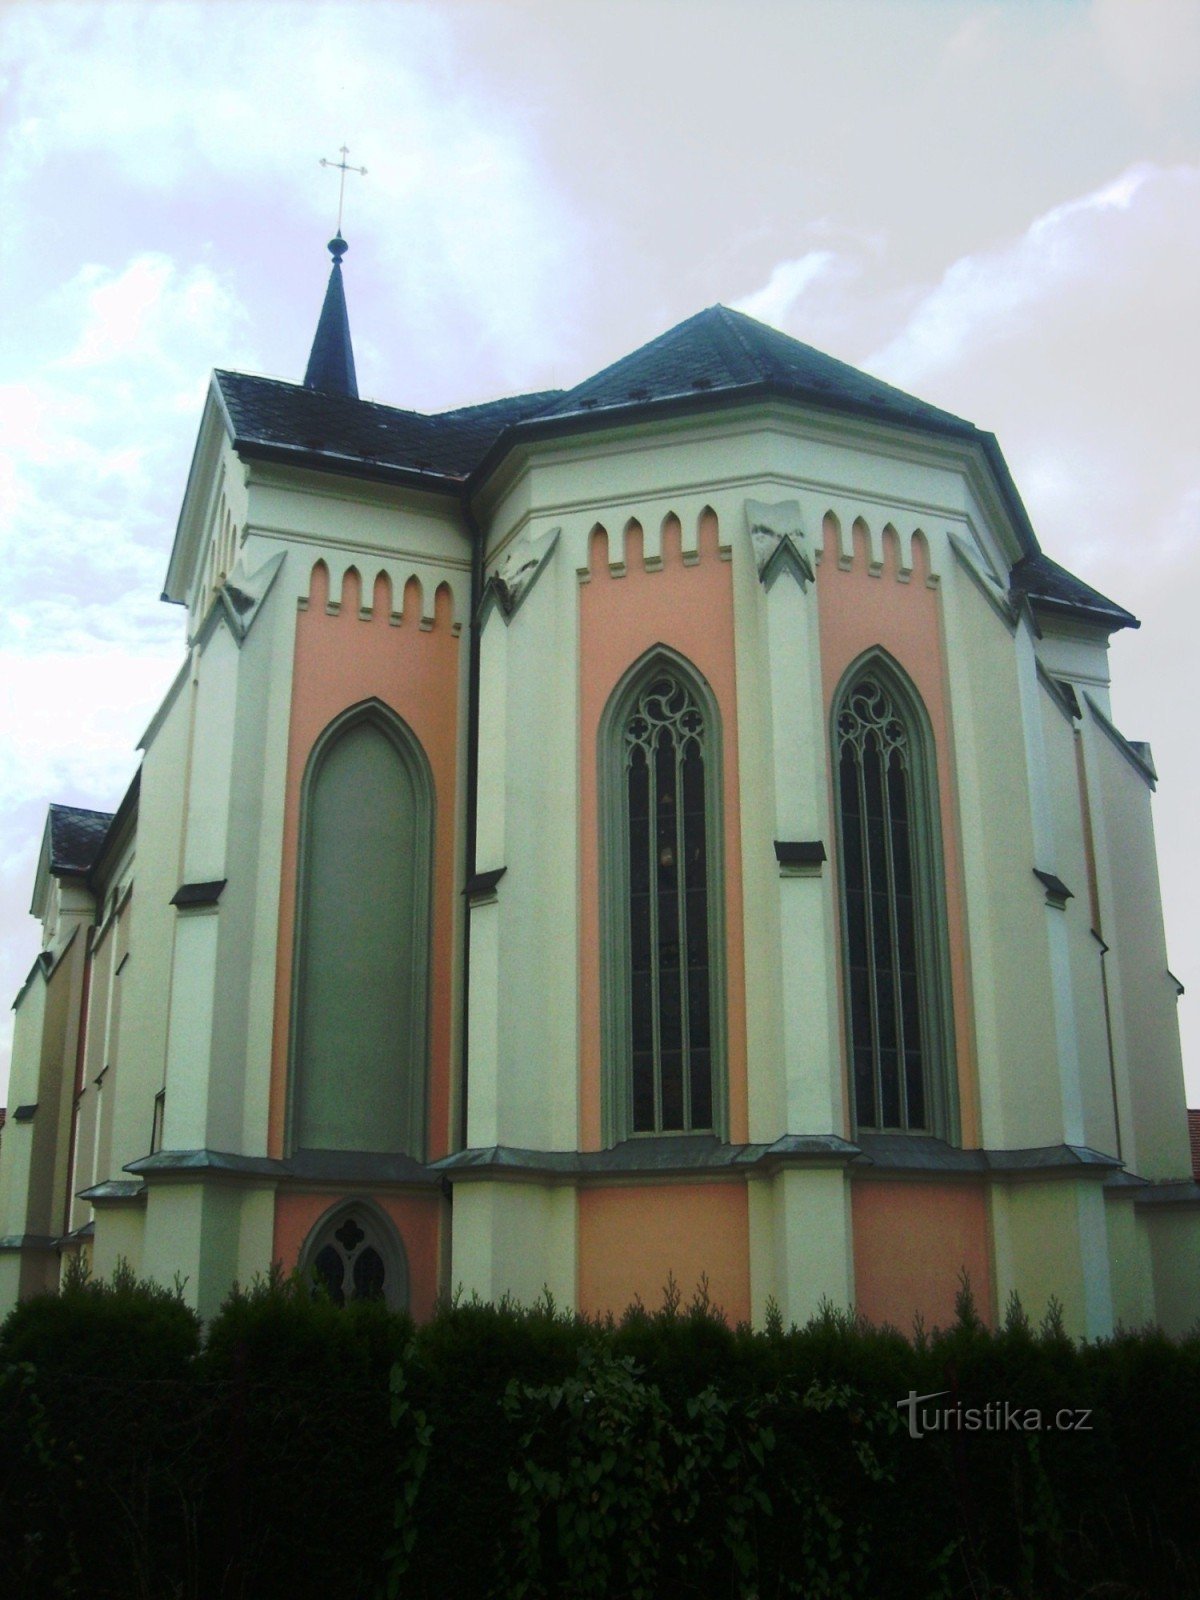 ネオゴシック様式の教会